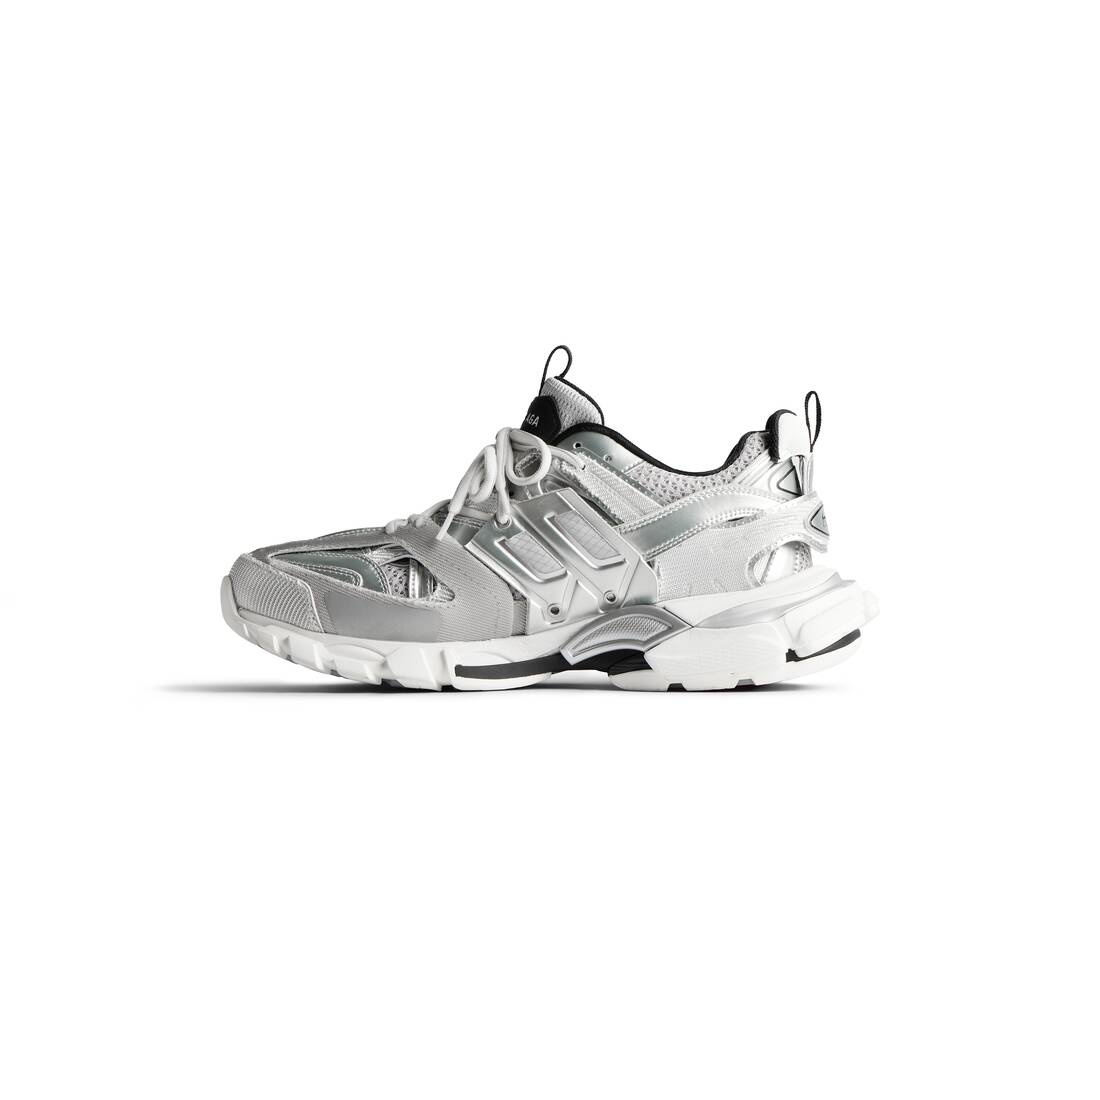 Men's Track Sneaker in Silver/white/black - 4